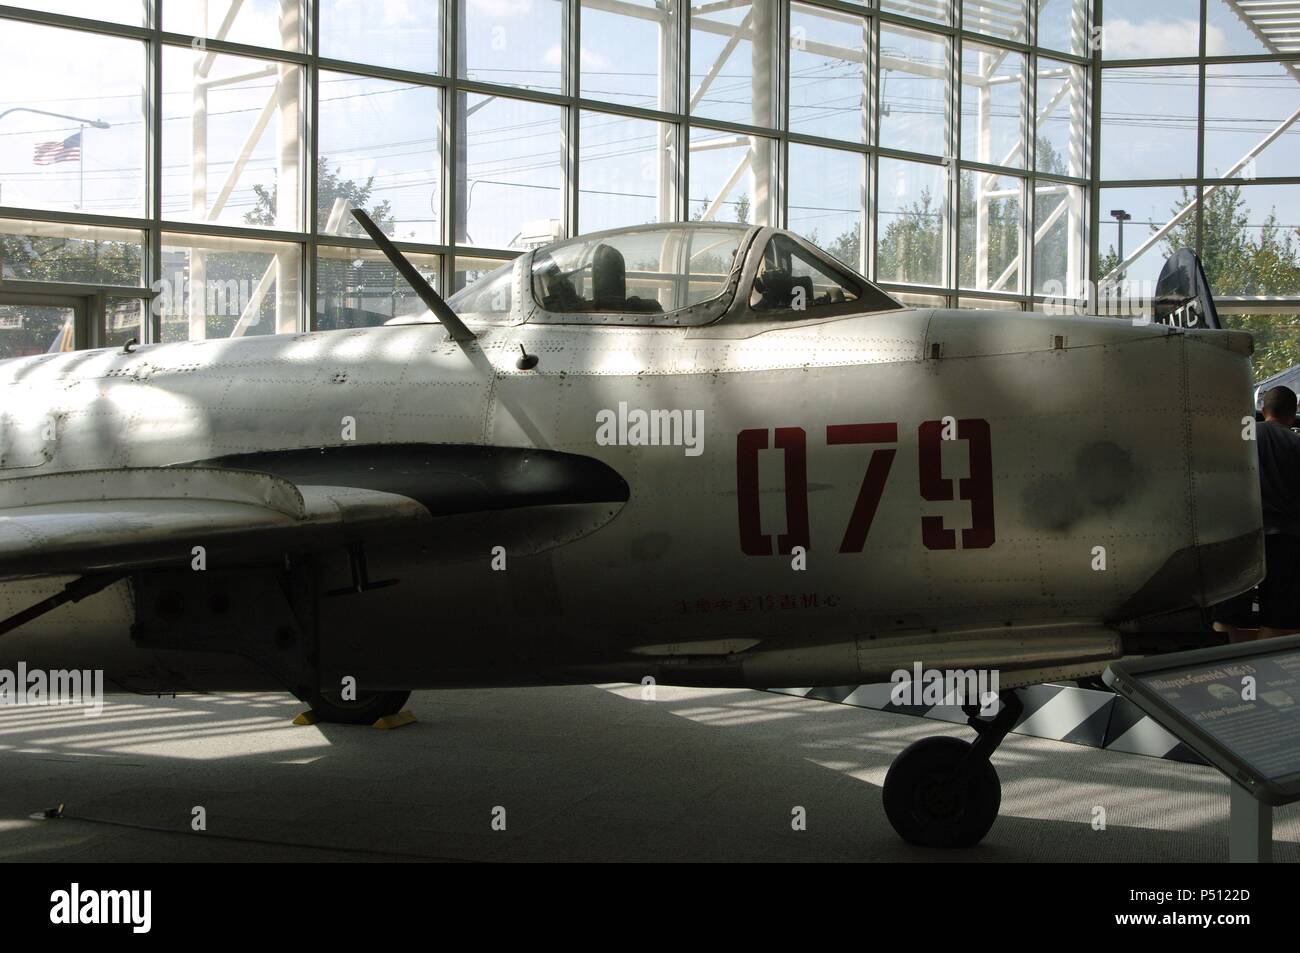 'MIKOYAN-GUREVICH MiG-15' (1950). Desarrollado por la Unión Soviética tras la Segunda Guerra Mundial. Entró en servicio en 1949, empleado en Corea del norte, Unión Soviética y China. Museo del Vuelo. Seattle. Estado de Washington. Estados Unidos. Stock Photo